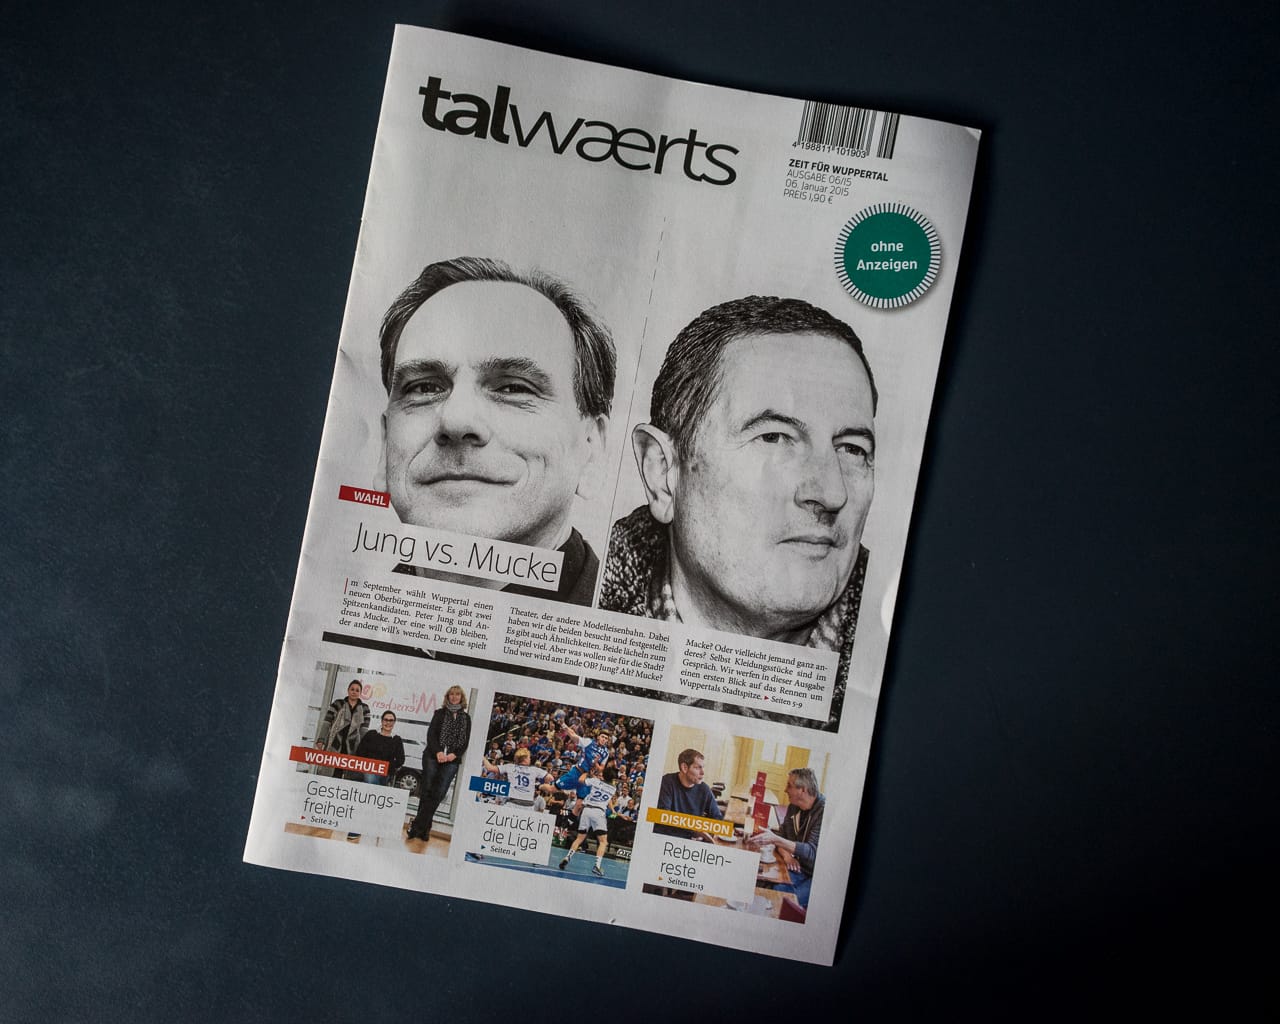 Talwaerts zeigt, wie ein gutes lokales Wochenmagazin aussieht